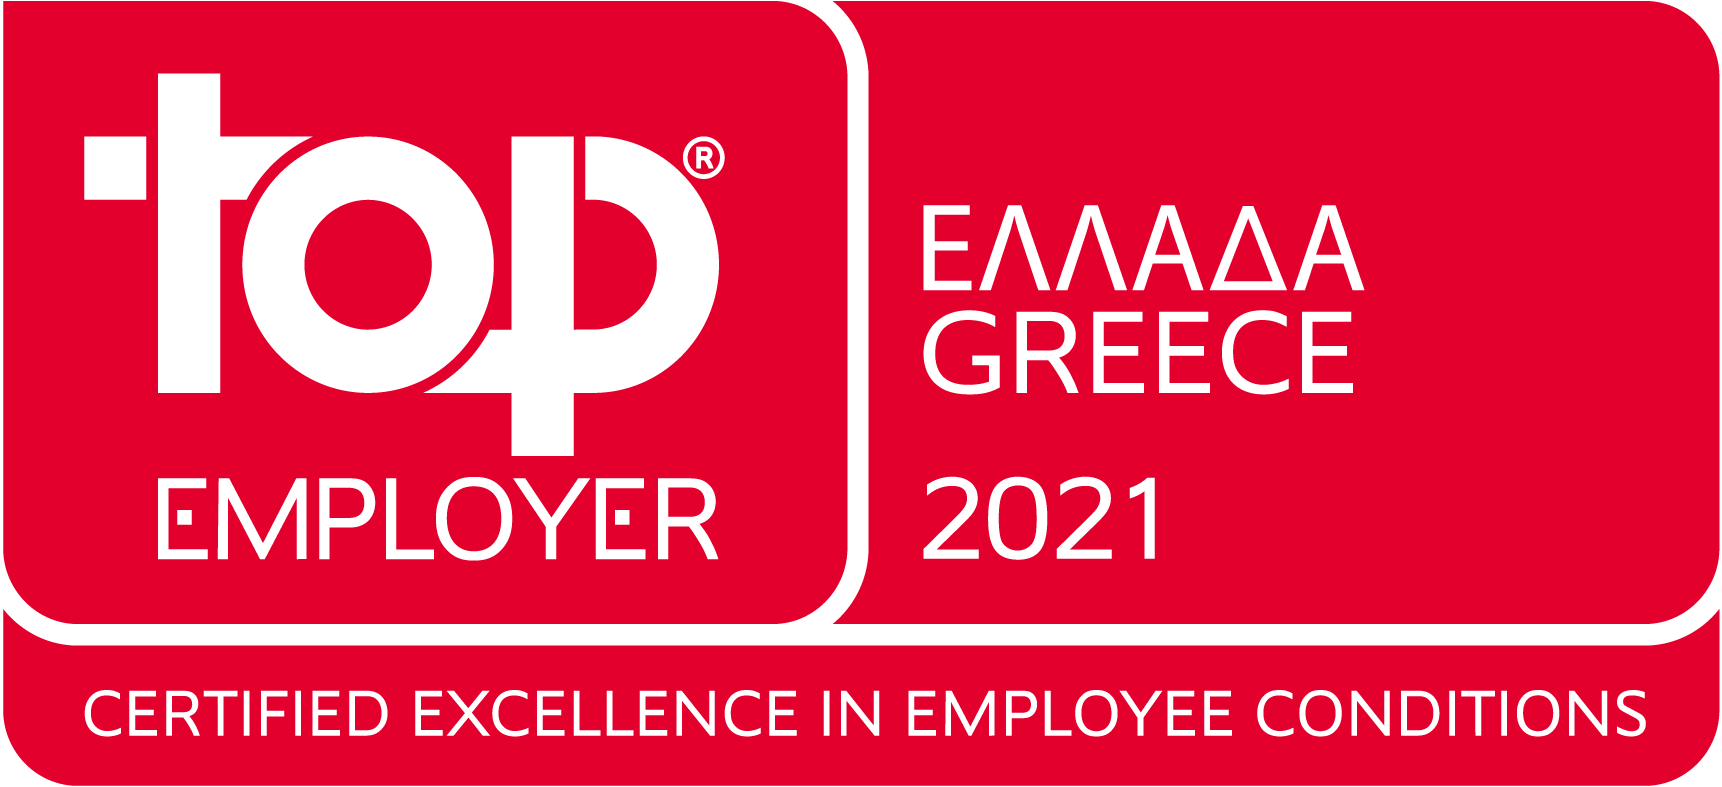 Η L’Oréal Hellas αναγνωρίζεται ως Top Employer στην Ελλάδα